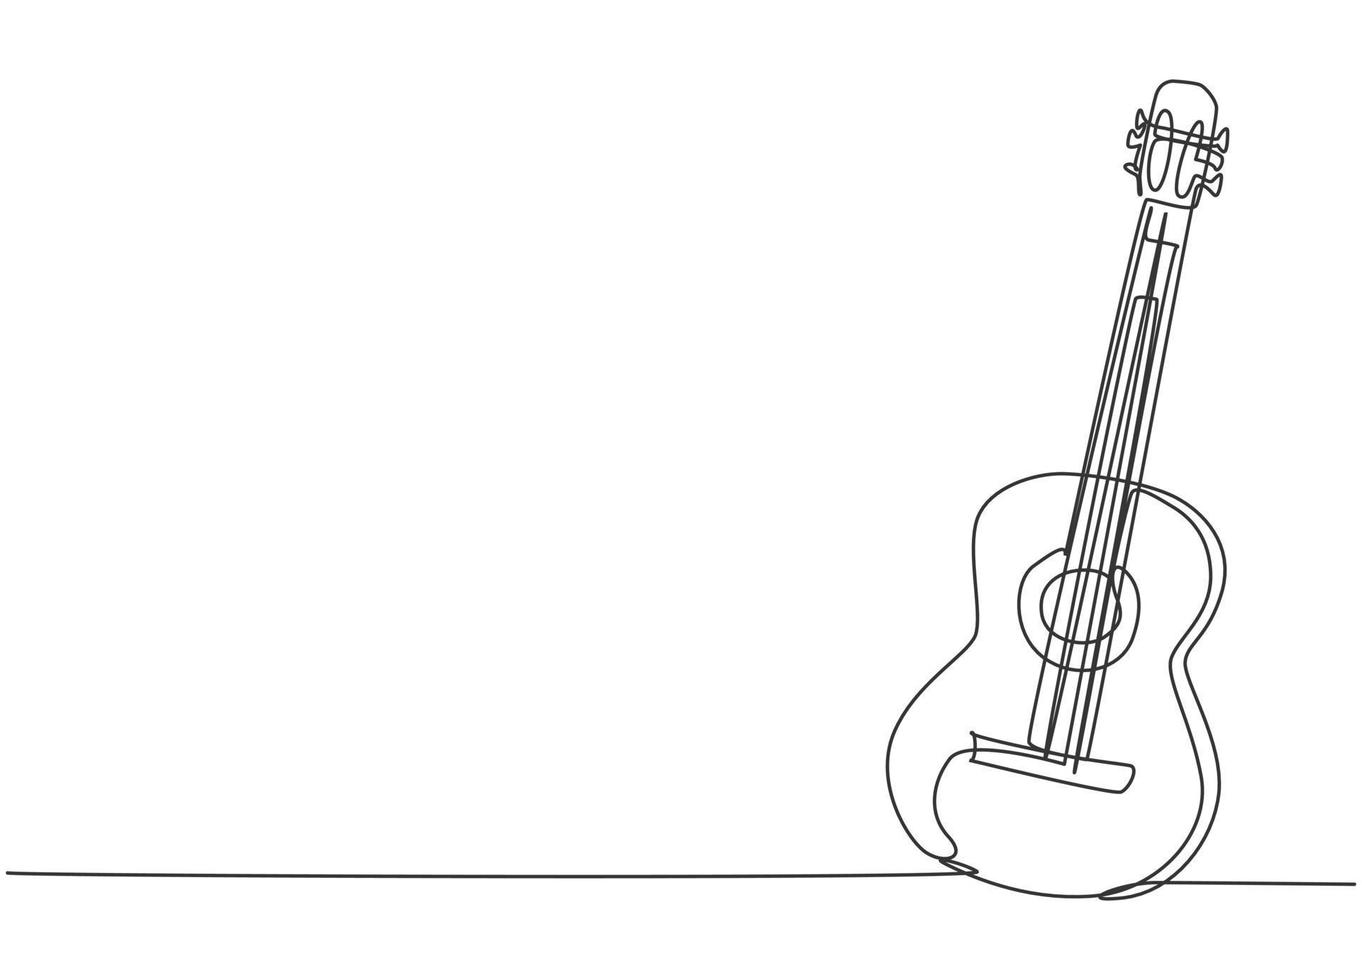 un disegno a tratteggio di una chitarra acustica in legno. alla moda strumenti musicali a corda concetto linea continua disegno grafico disegno vettoriale illustrazione